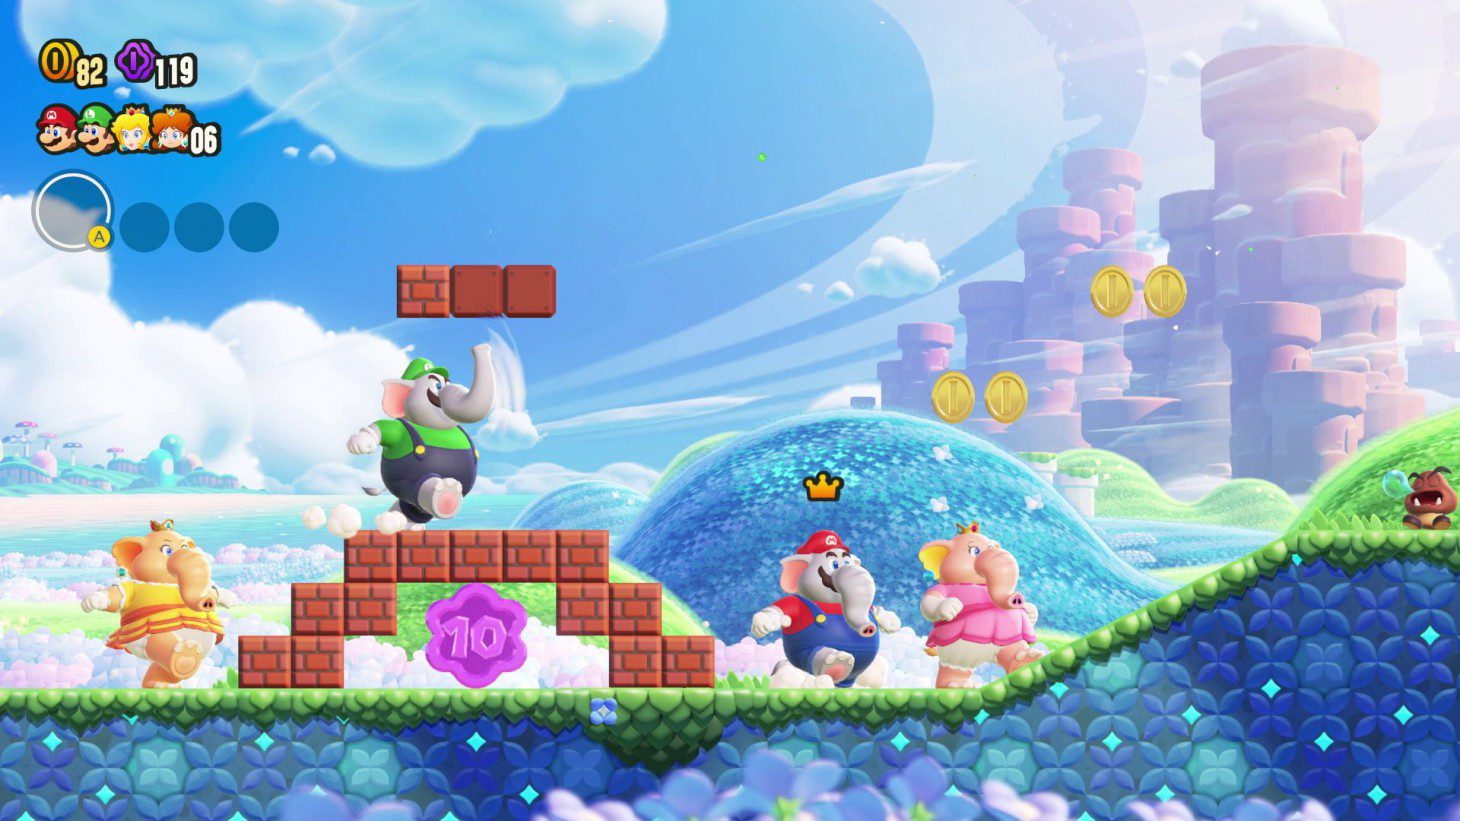 Super Mario Bros. Wonder: novo trailer lista as novidades do jogo - Game  Arena